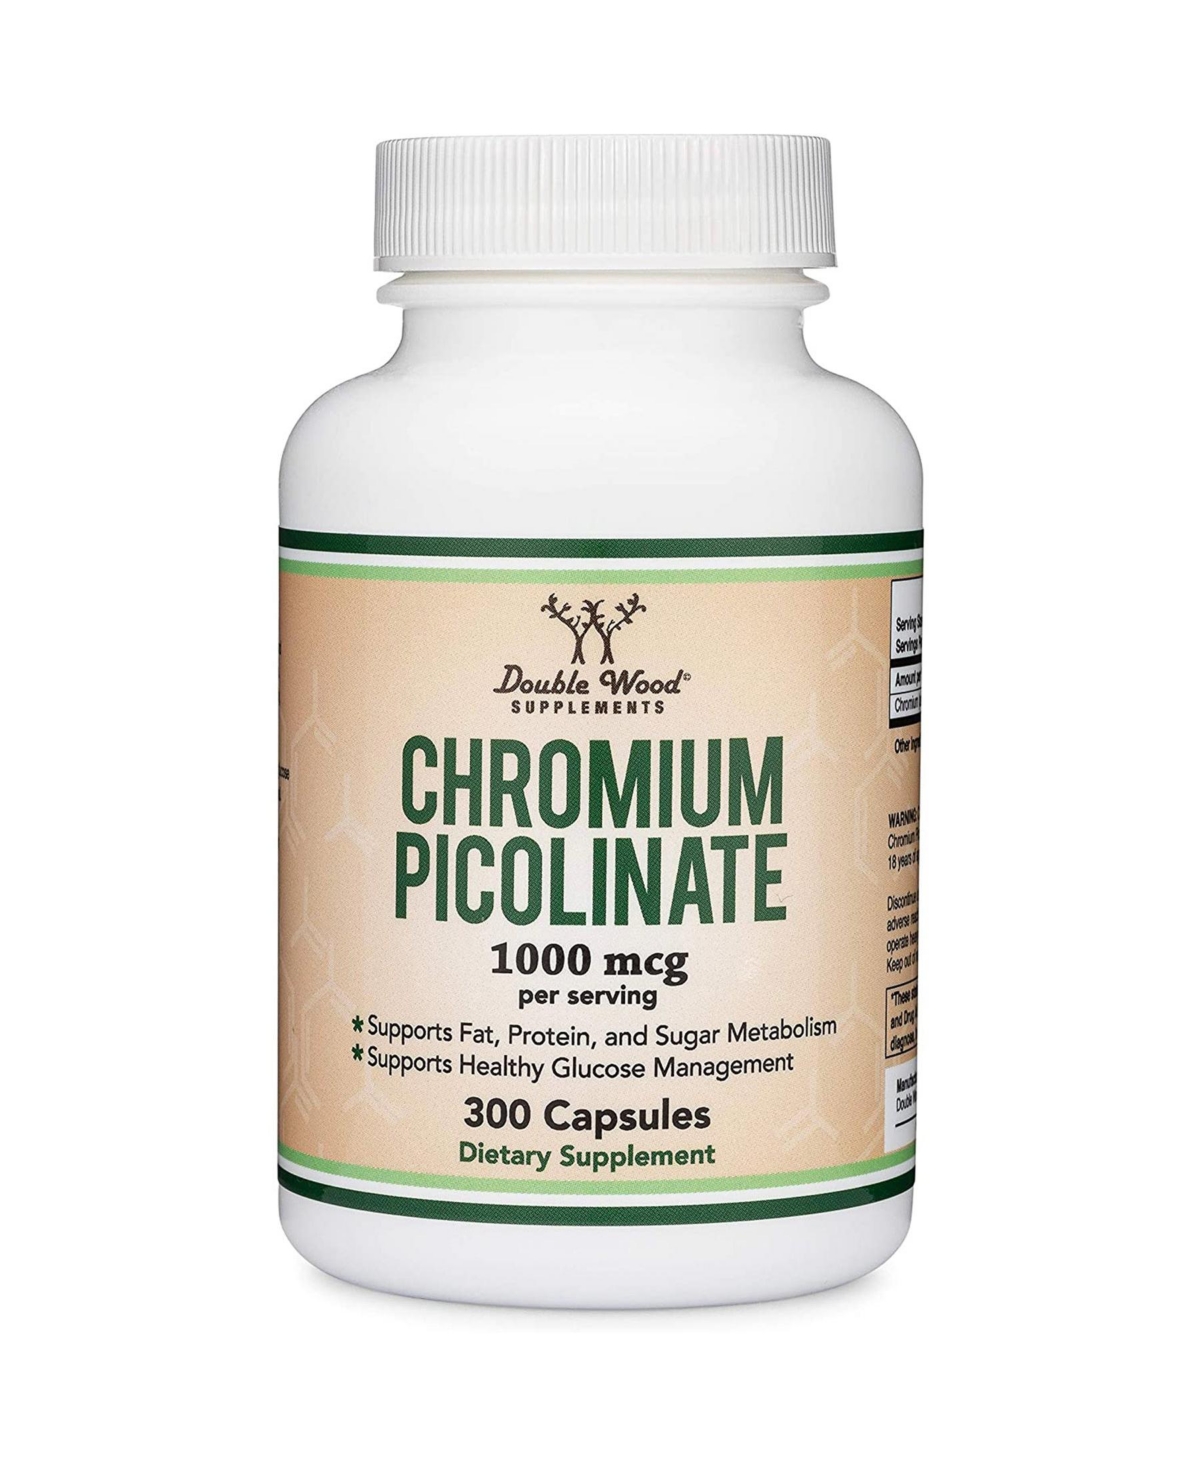 Chromium Picolinate - 300 capsules, 1000 mcg servings